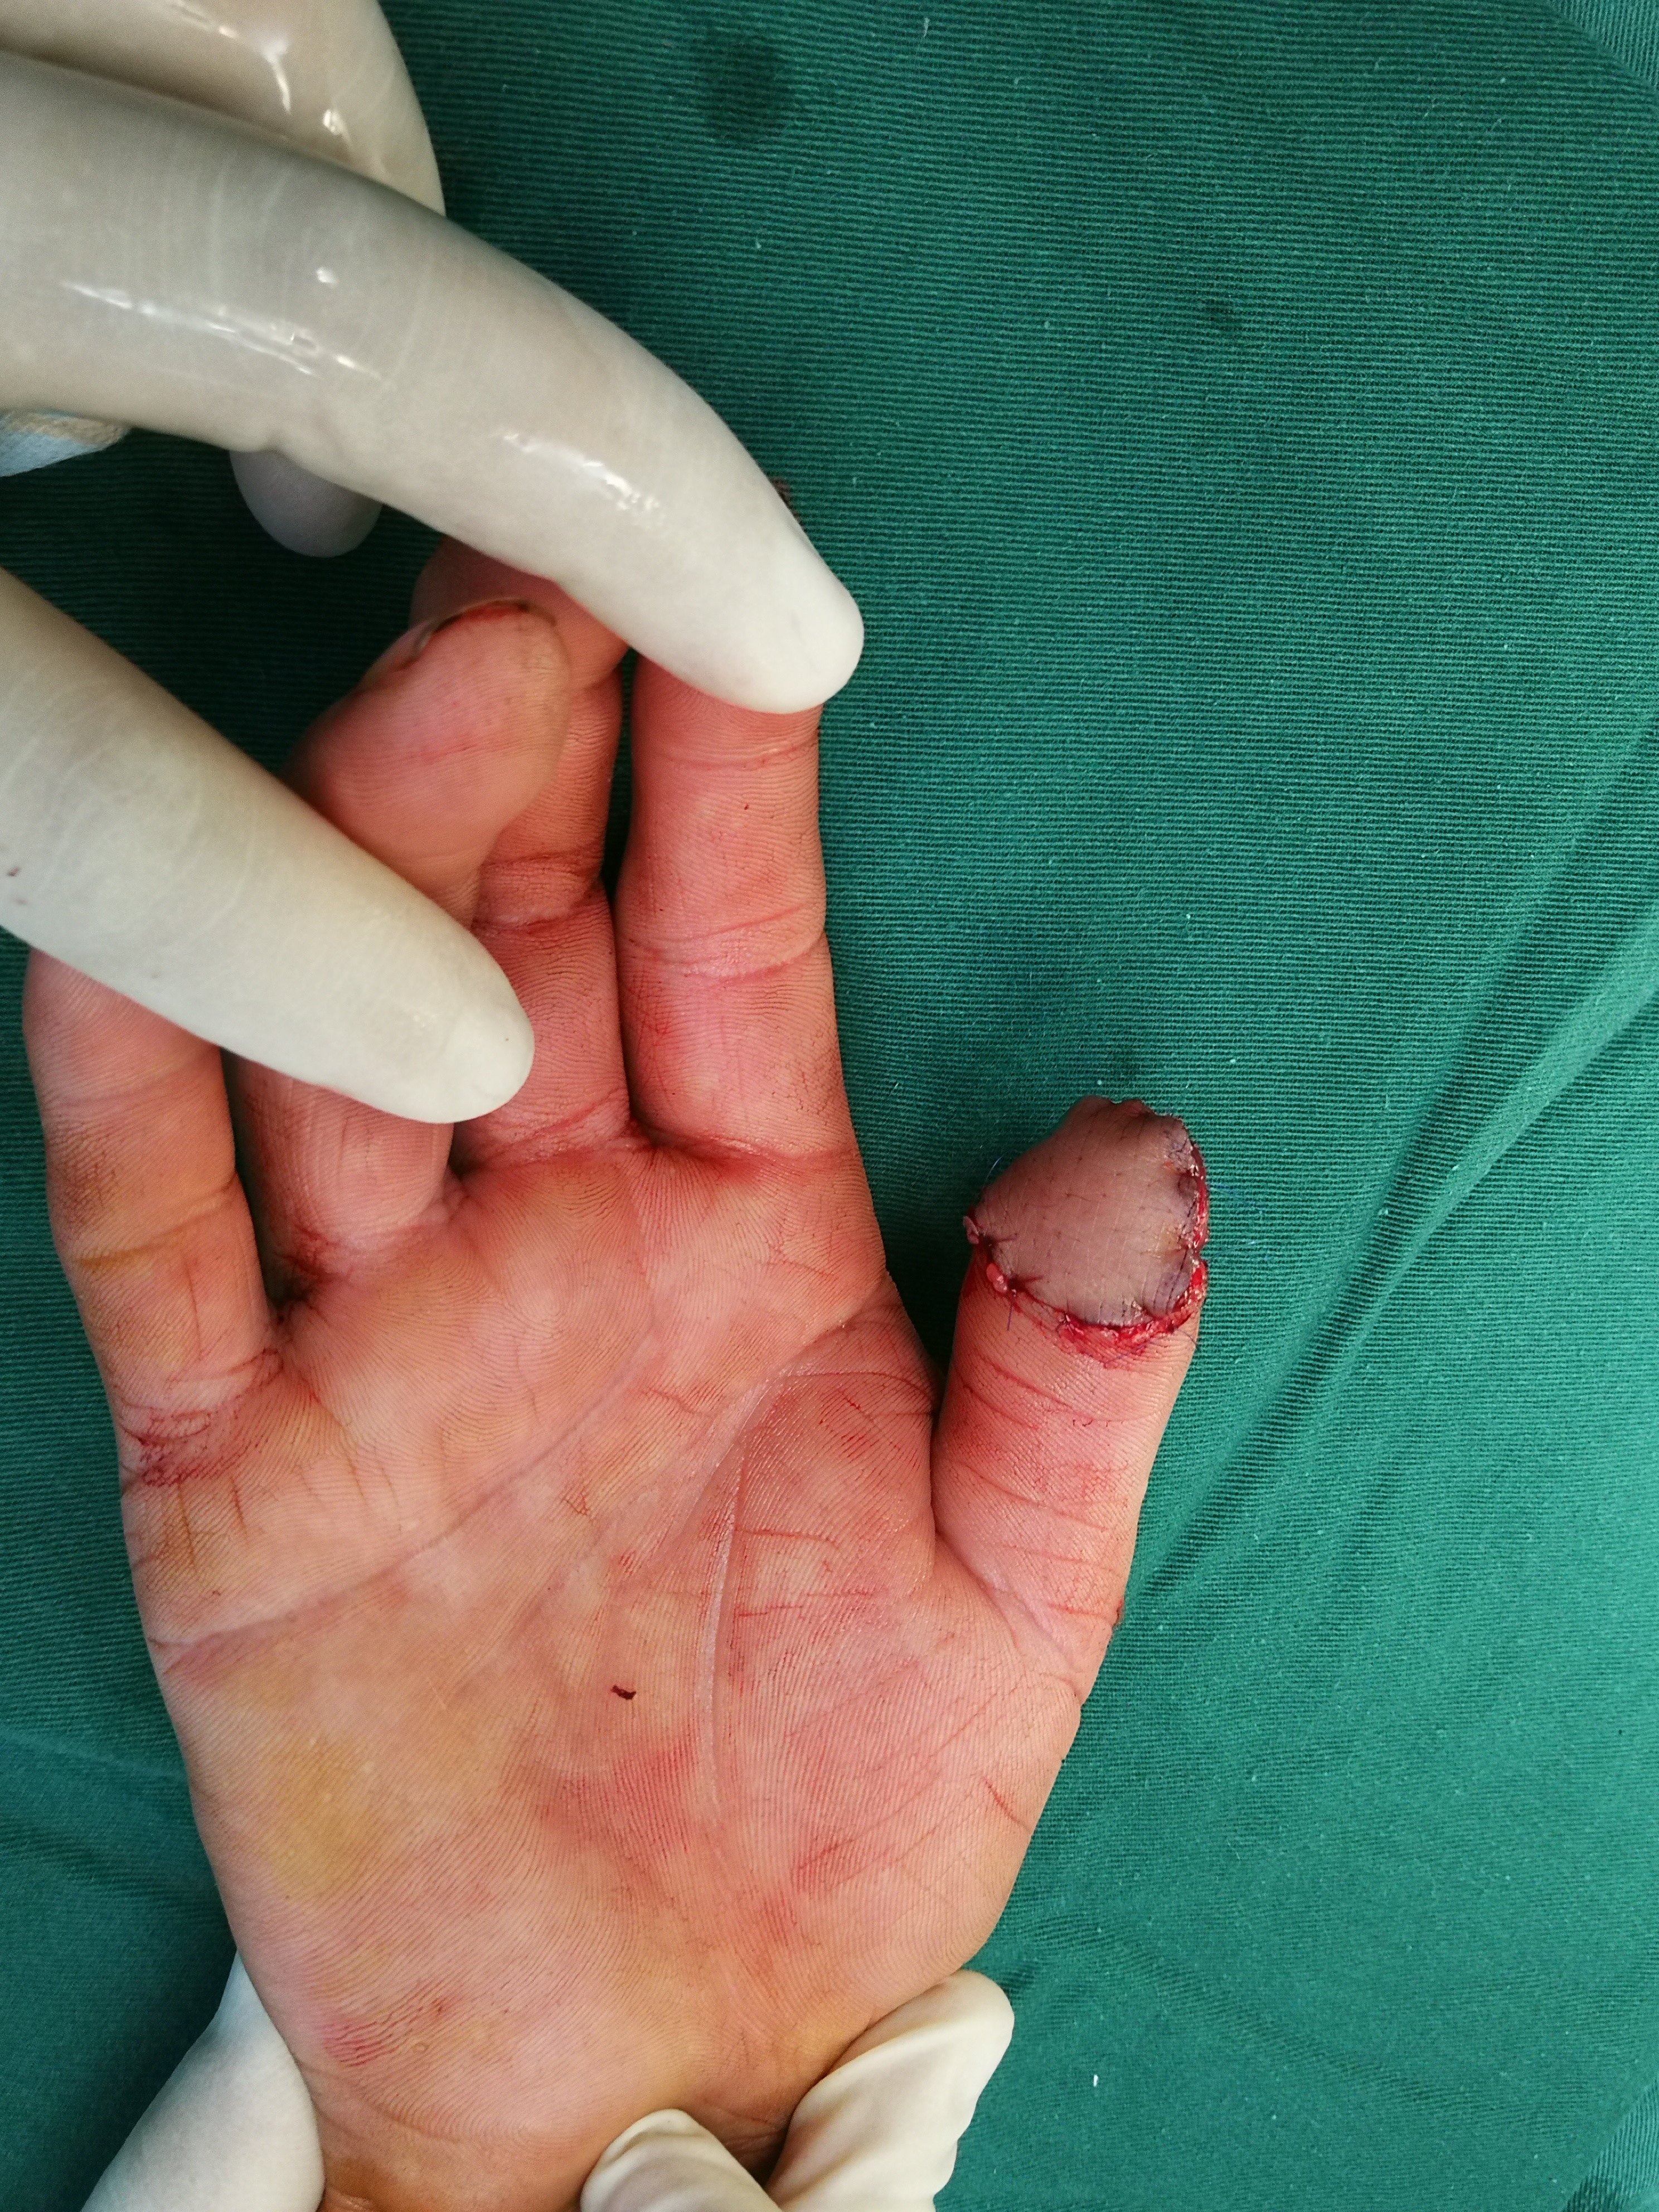 拇指尺背侧的供区能够直接缝合,损伤较小.作者认为这种方法是拇指指腹